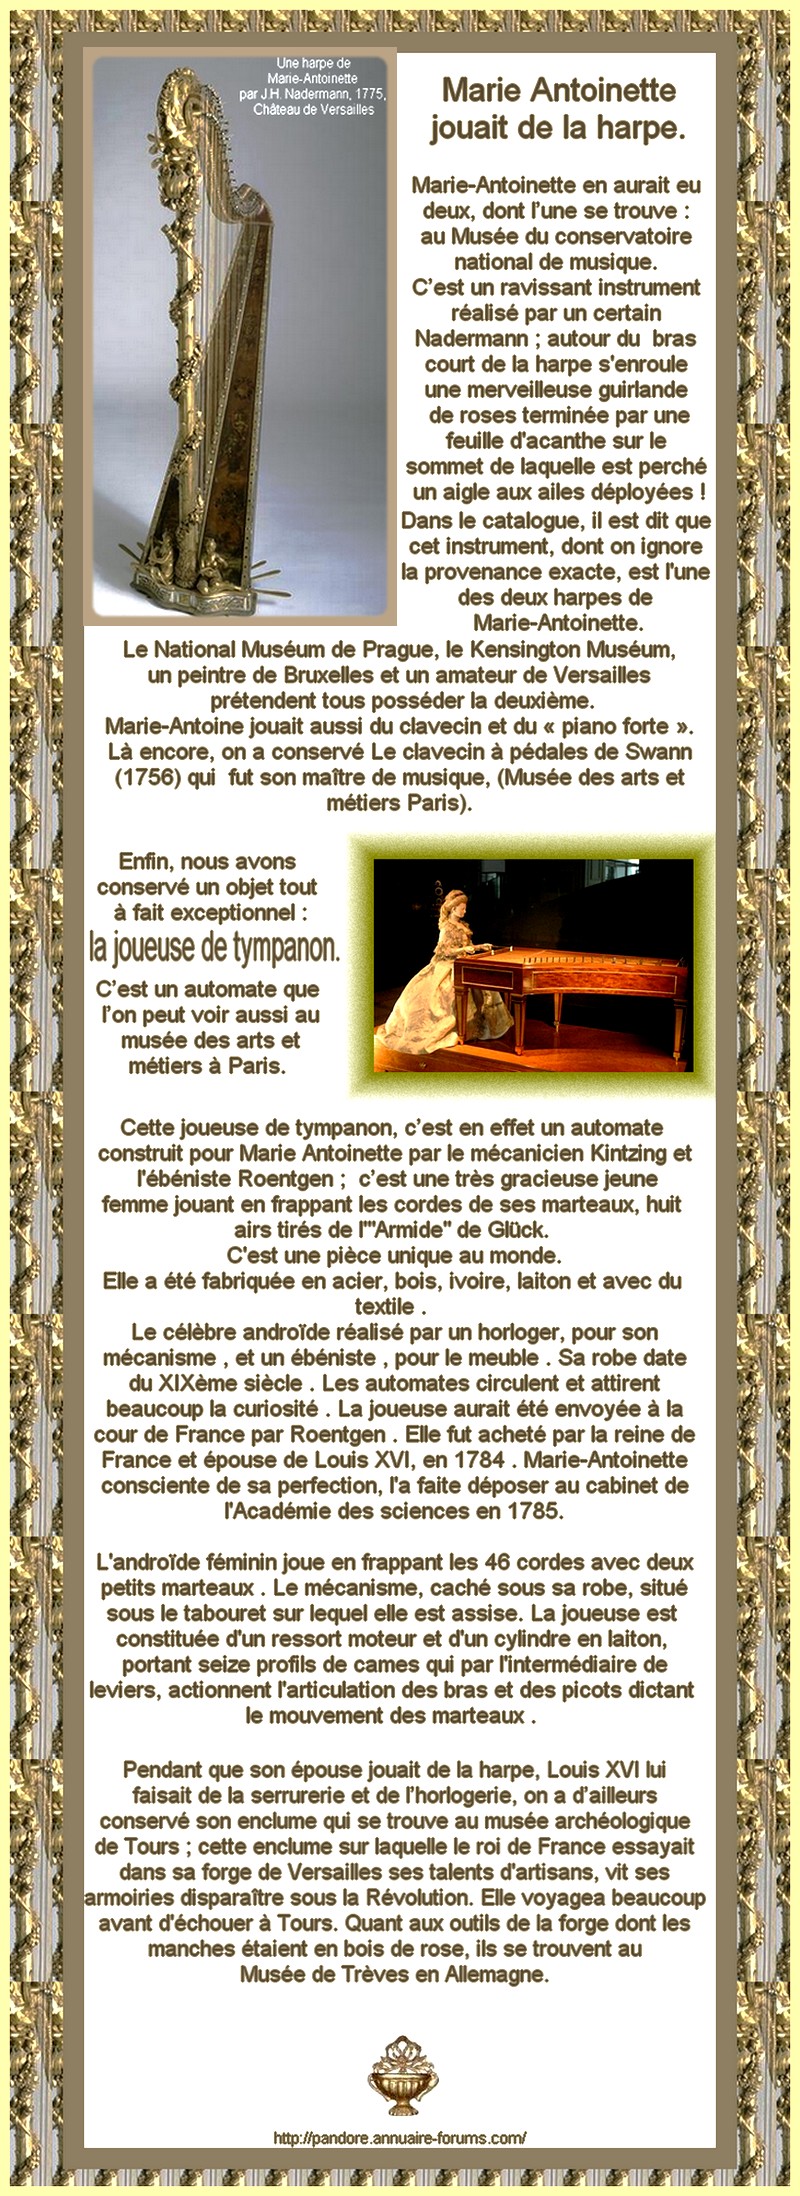 MARIE ANTOINETTE JOUAIT DE LA HARPE - LOUIS XVI FAISAIT DE L'HORLOGERIE  11070306590888888418677